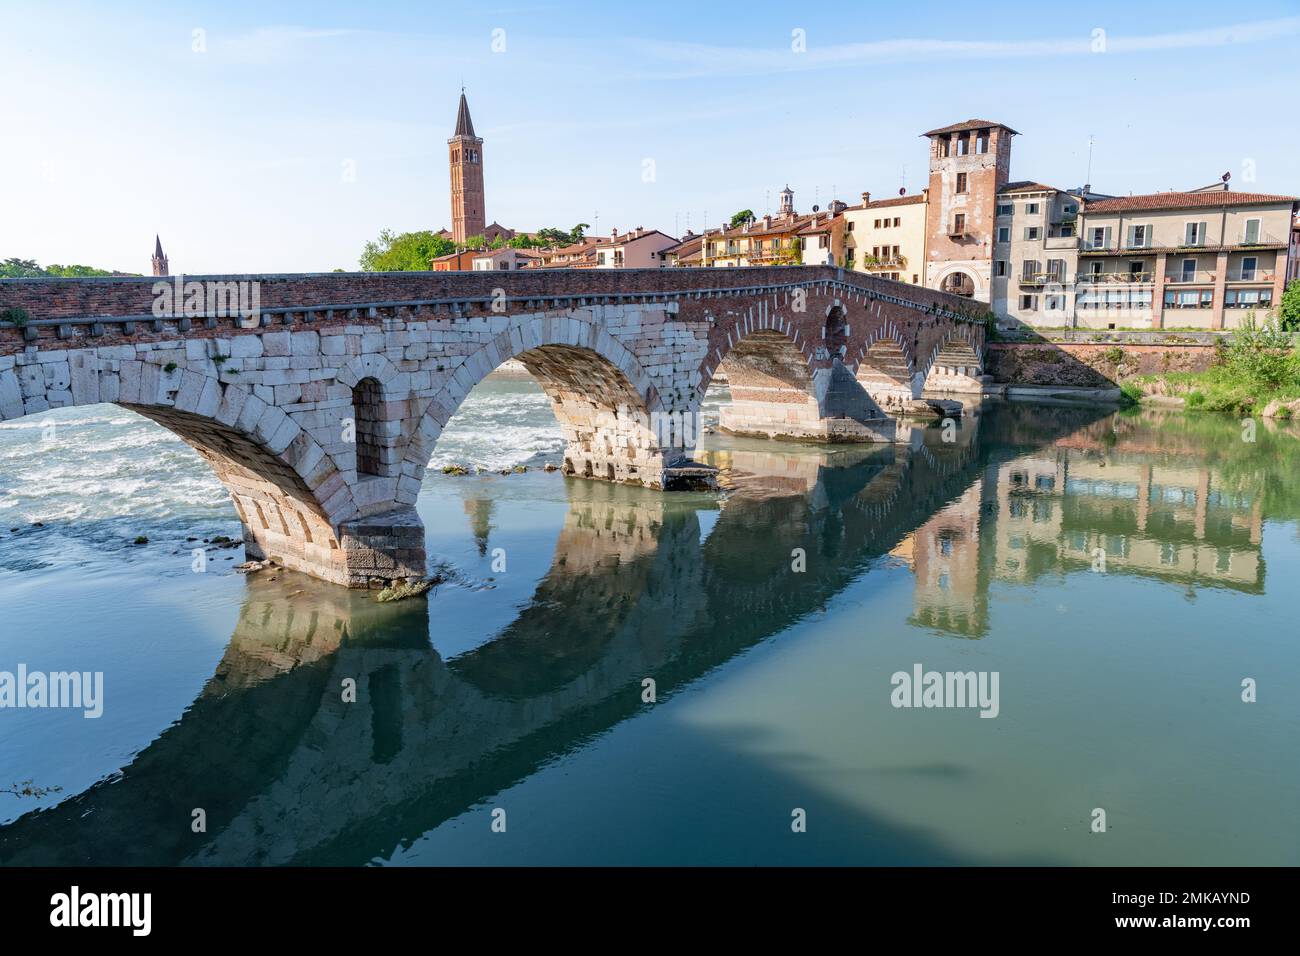 El agua que fluye bajo los arcos del puente Ponte Pietra, que se extiende por el Fiume Adige en Verona, Italia, contra el cielo azul claro. El puente está adentro Foto de stock